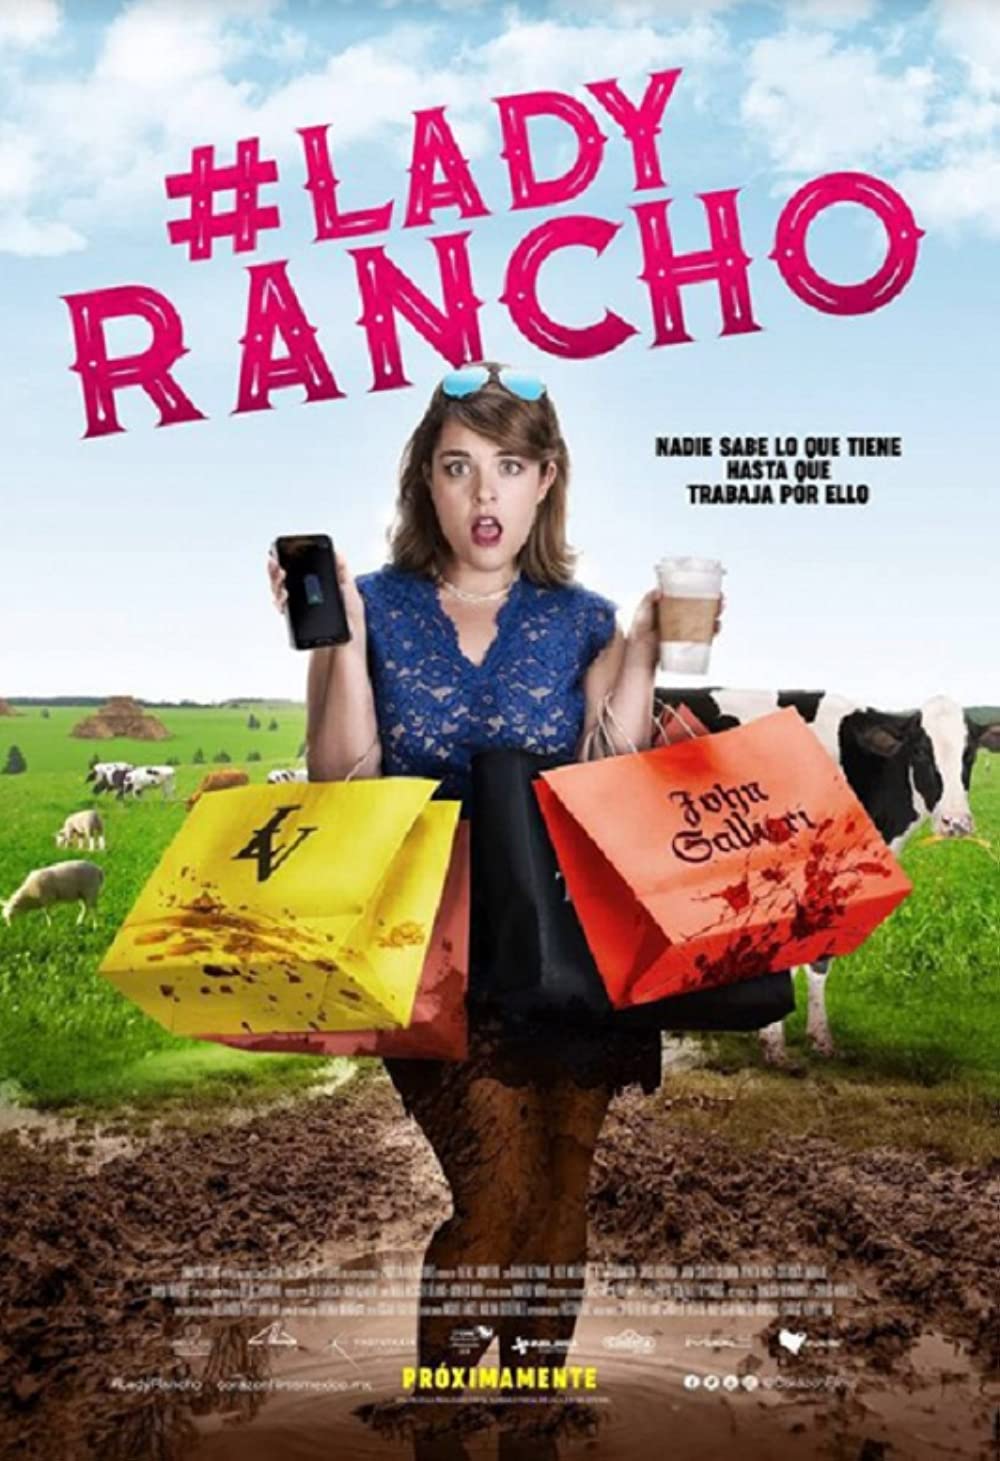 Lady Rancho